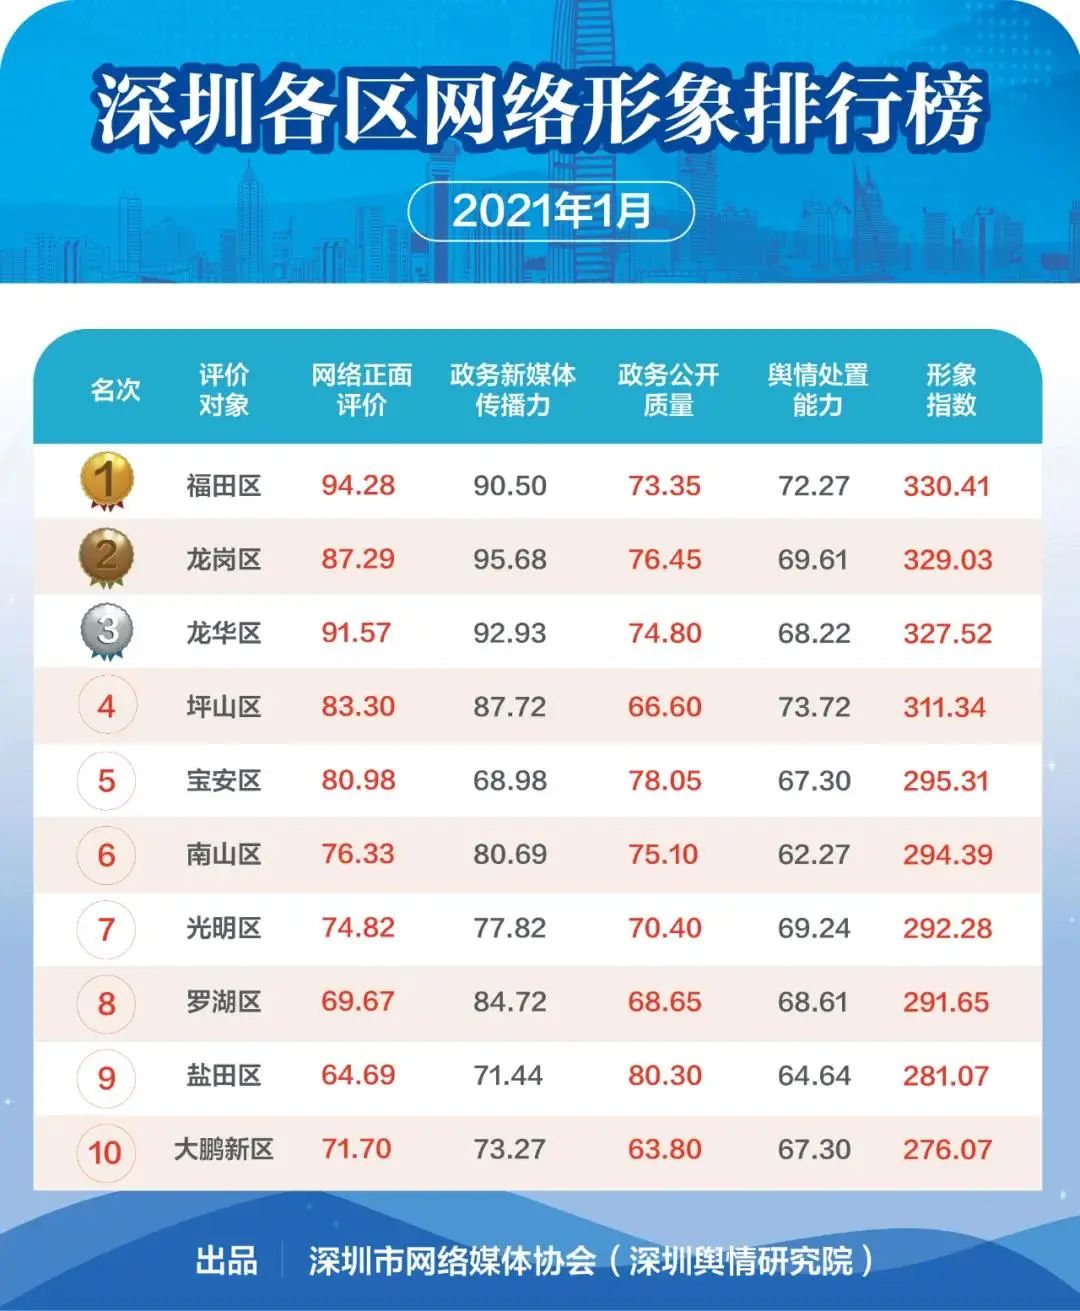 福田位居“深圳各区网络形象排行榜”榜首